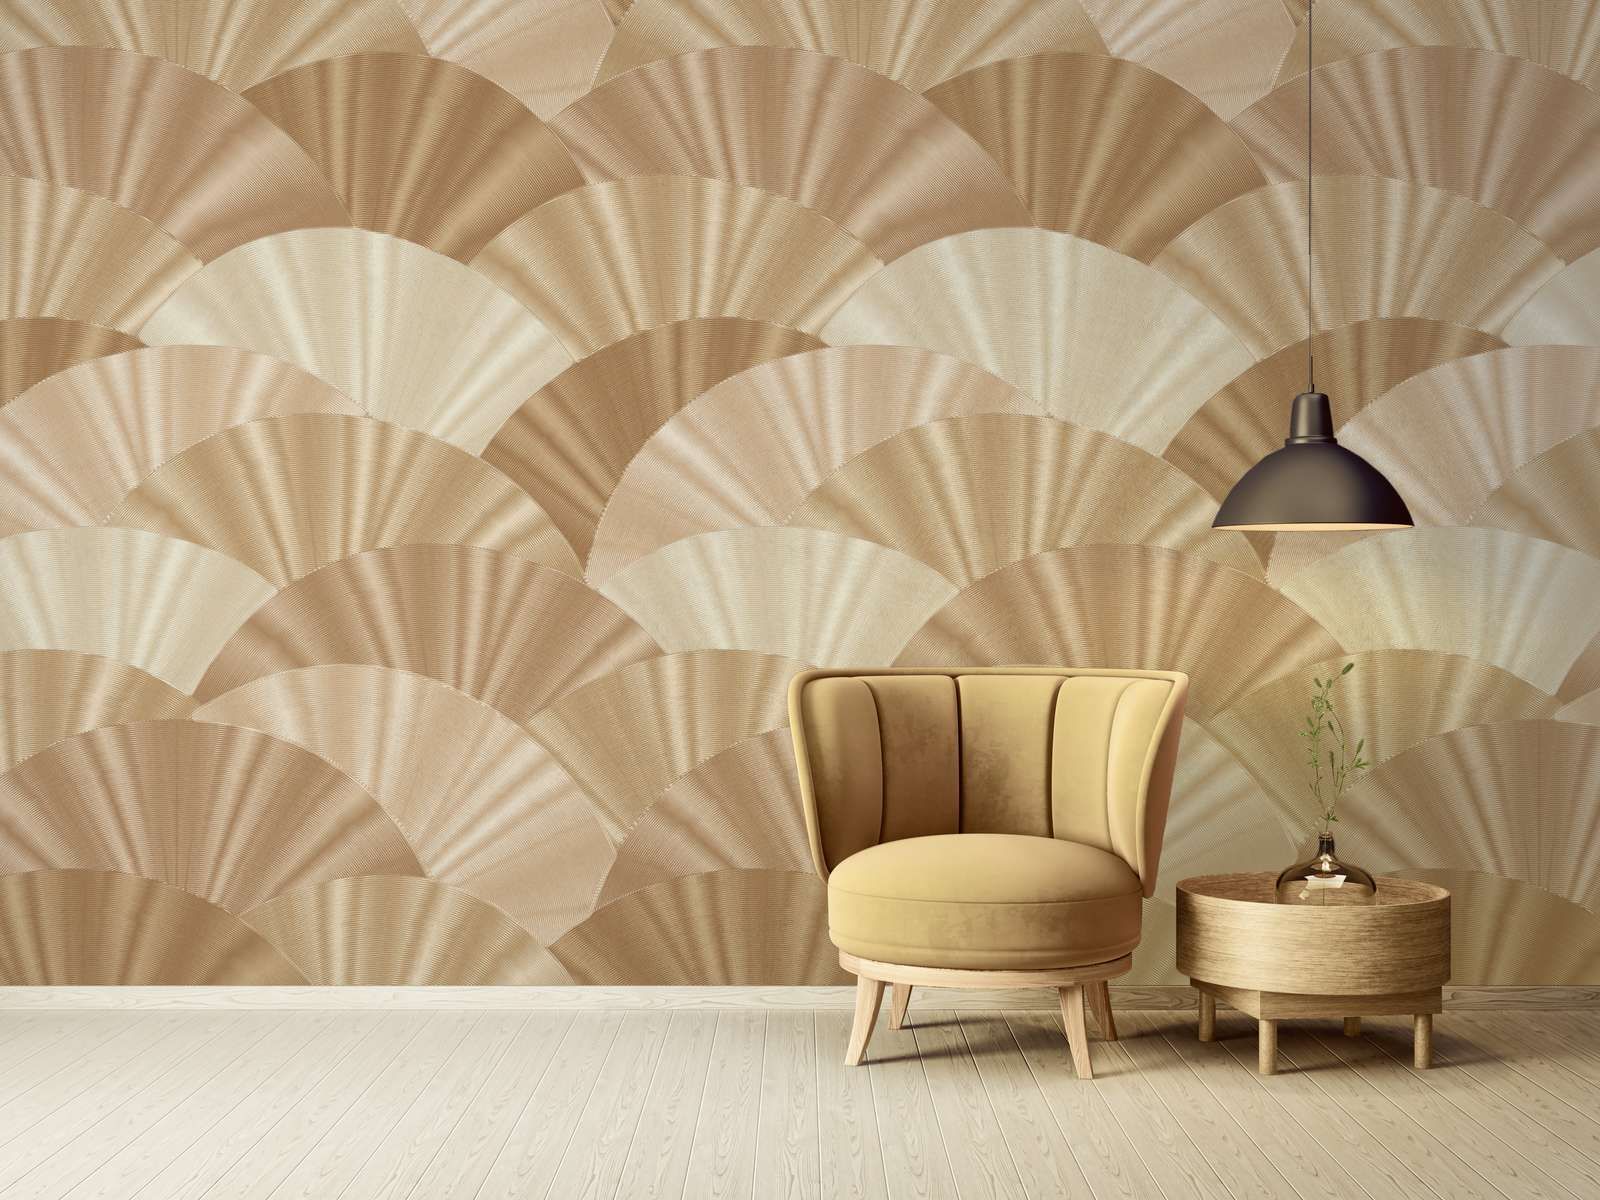             Abstract fan pattern wallpaper - gold, beige, cream
        